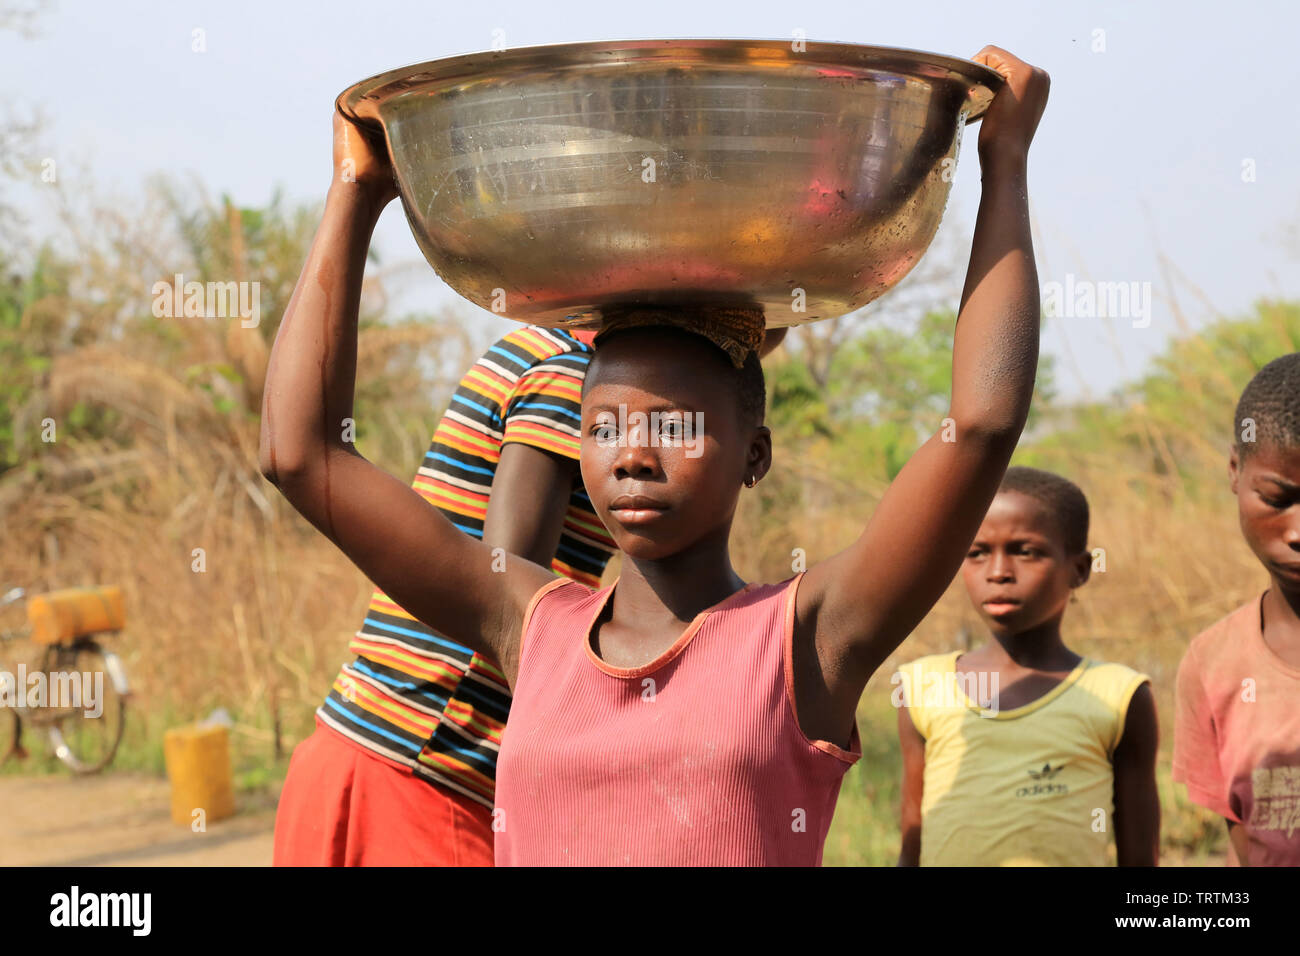 Porteuse d'eau. Datcha Attikpayé. Togo. Afrique de l'Ouest. Stock Photo